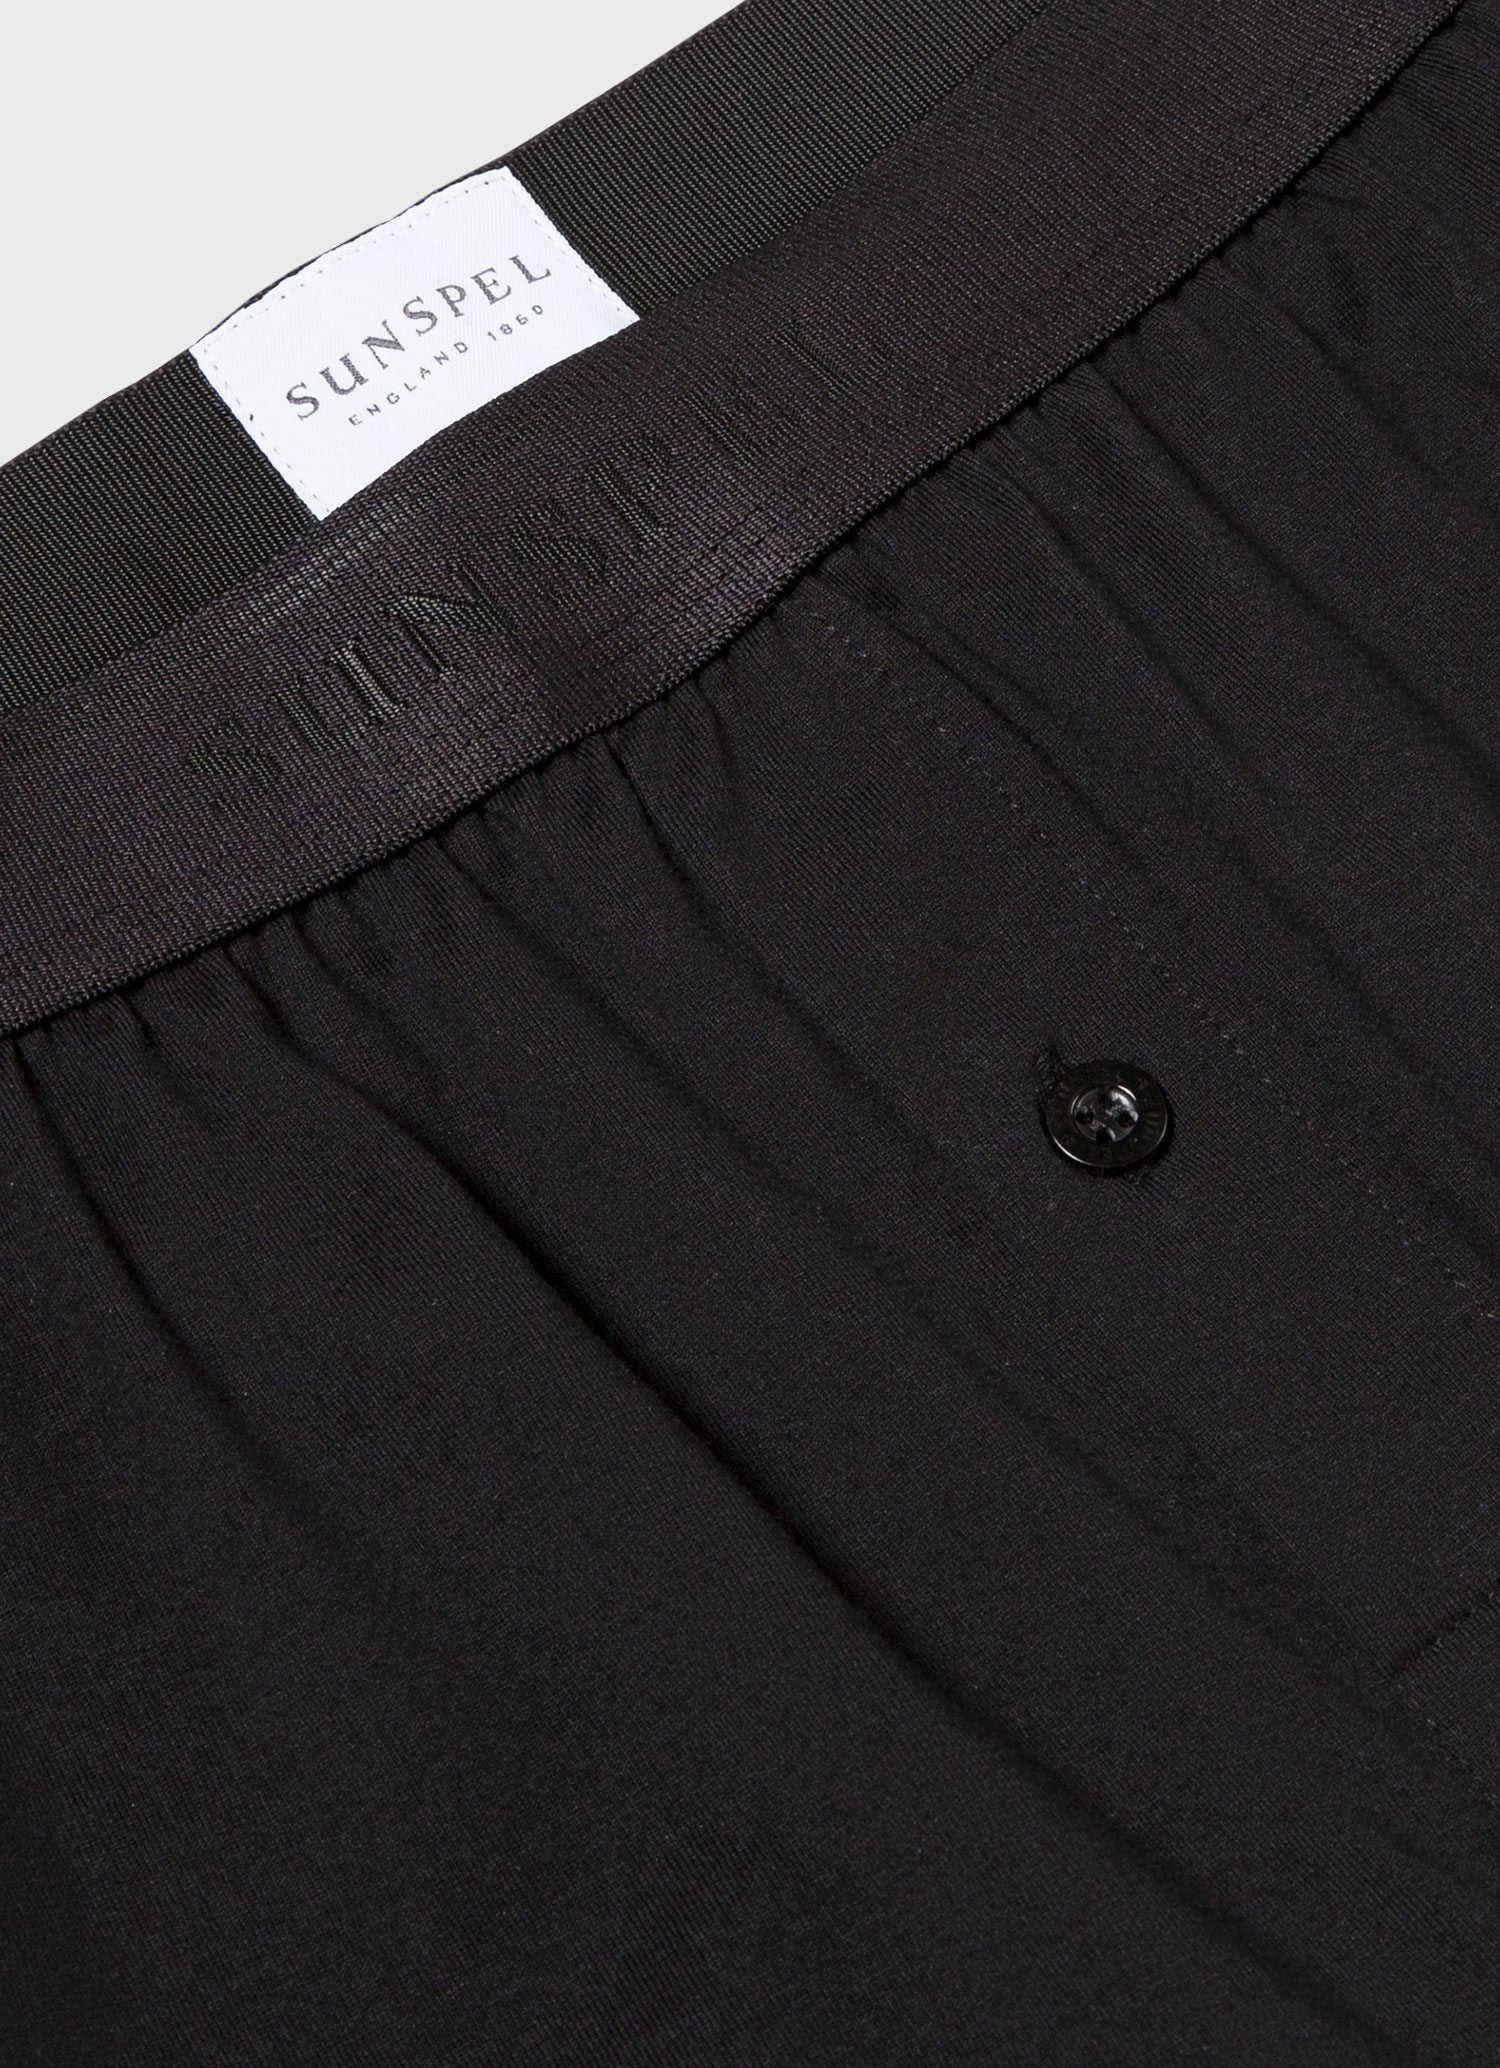 Men's Superfine Cotton One-Button Shorts in Black